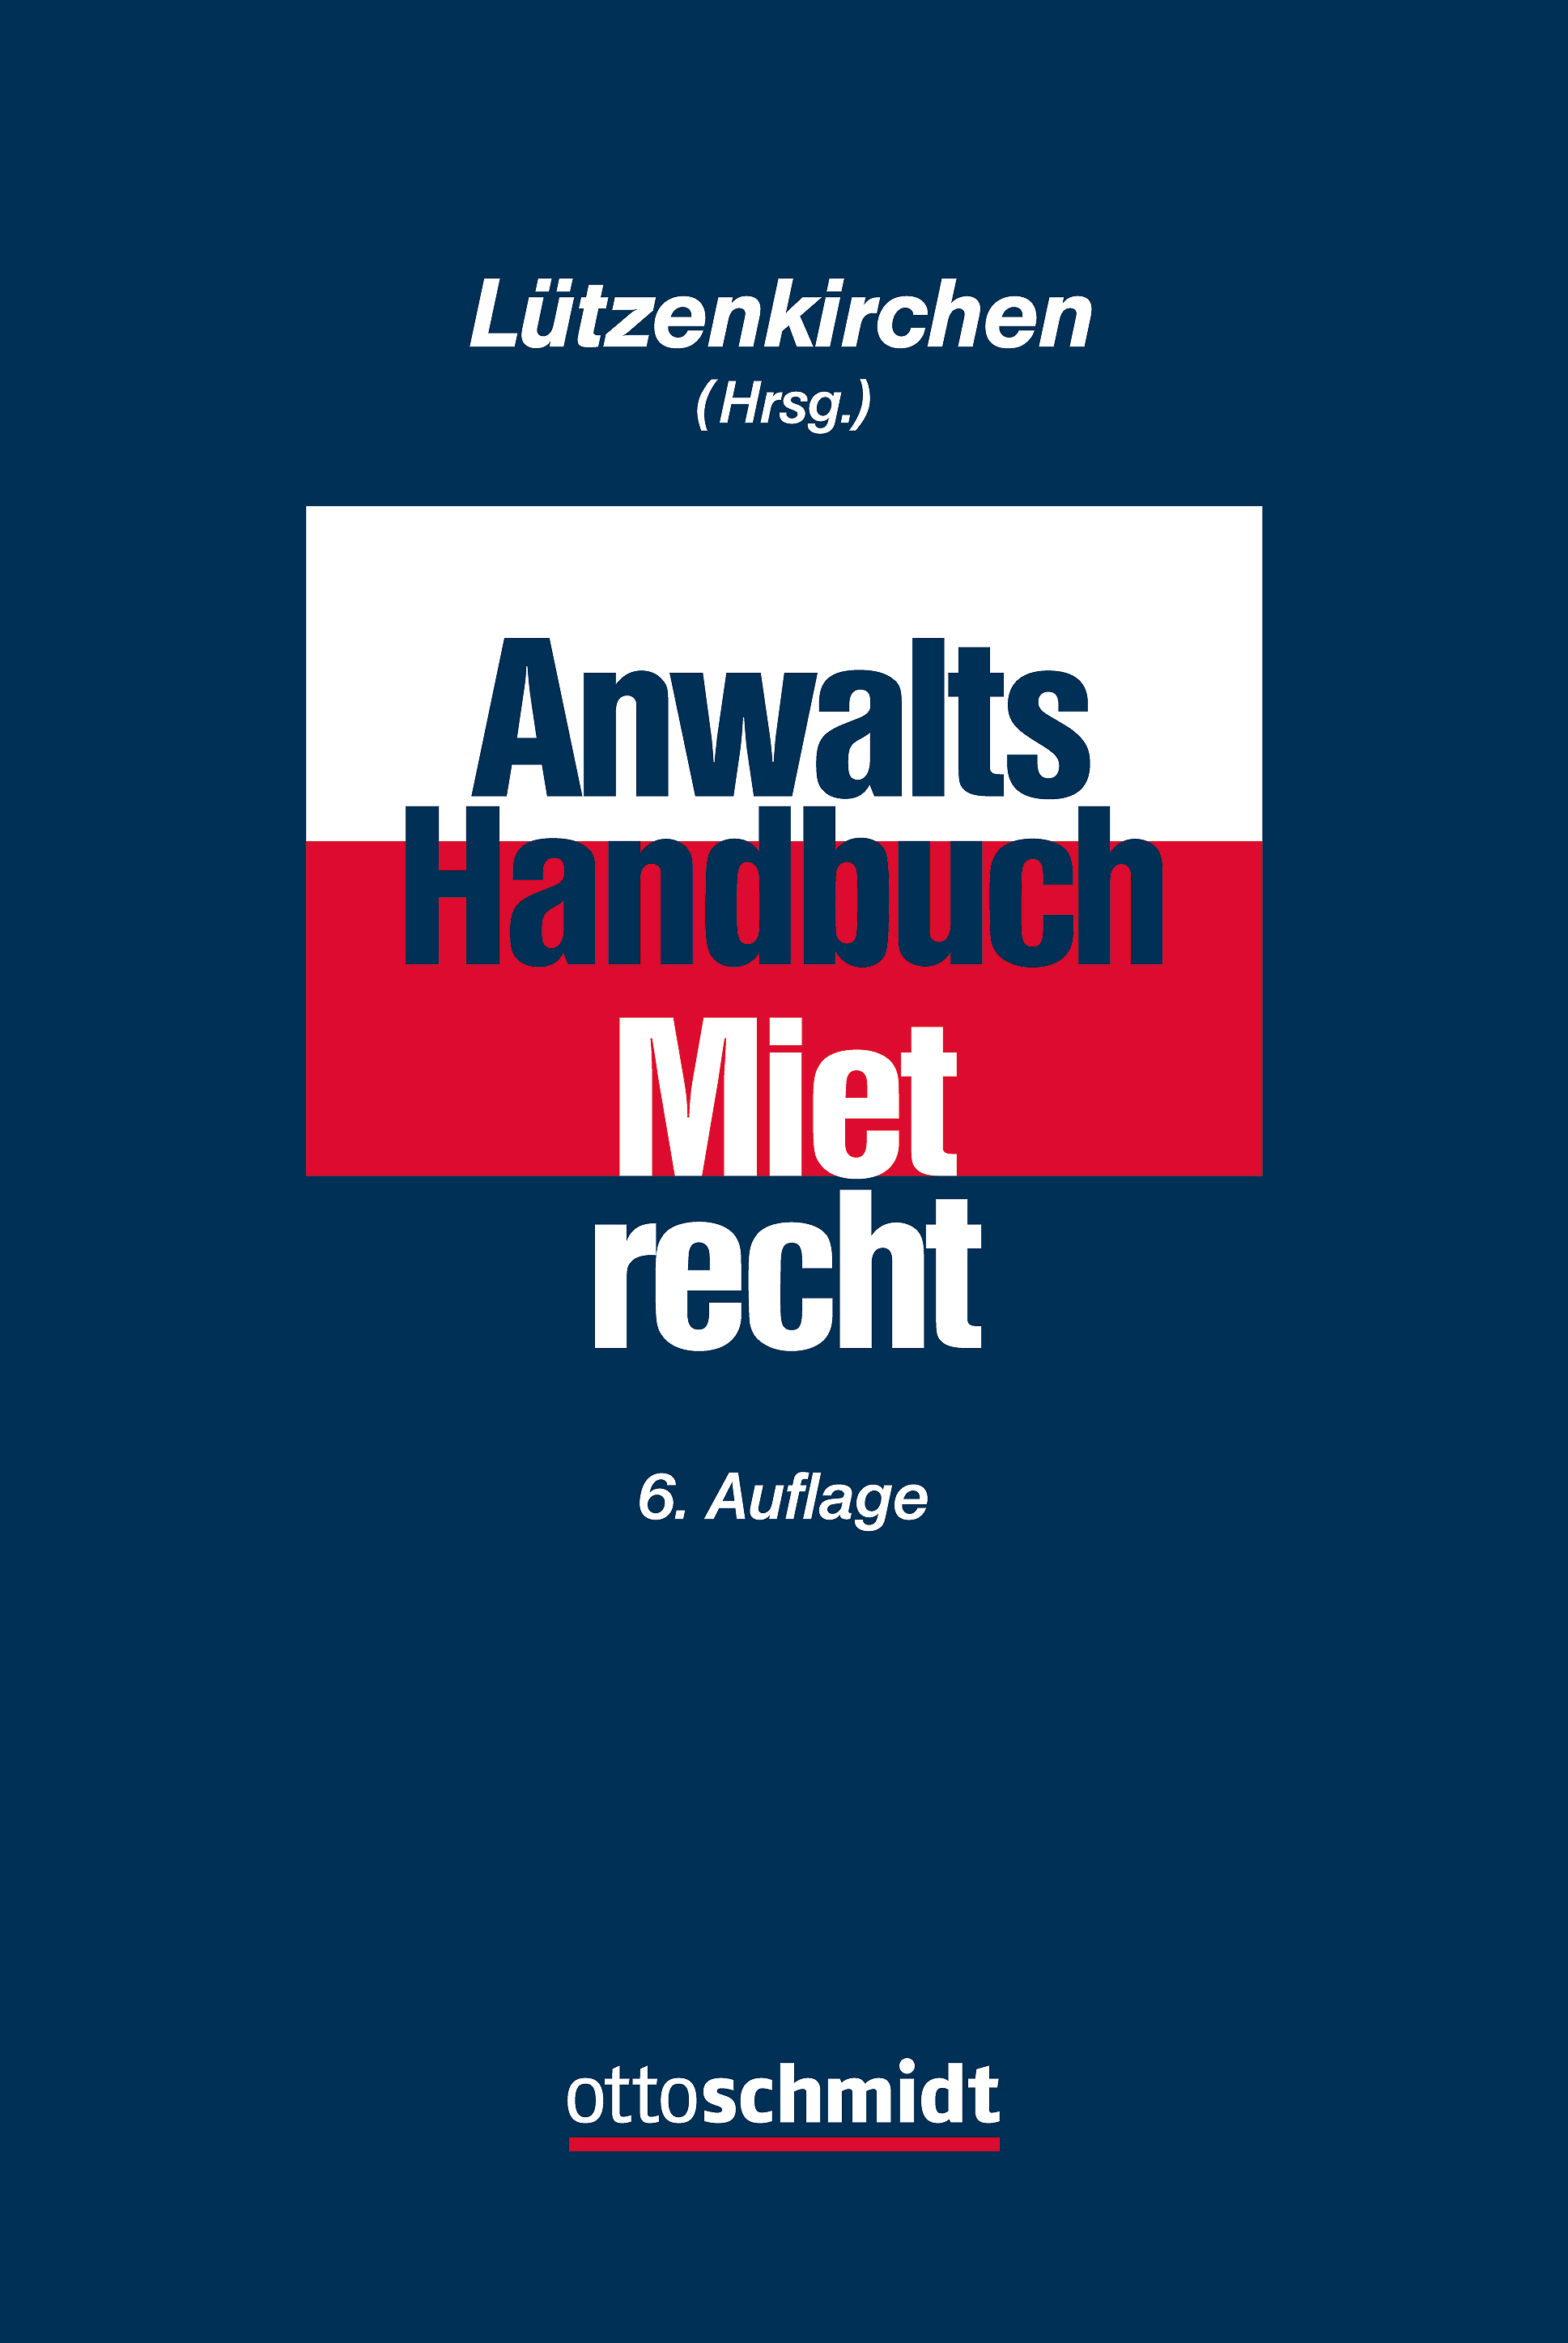 Abbildung: Anwalts-Handbuch Mietrecht